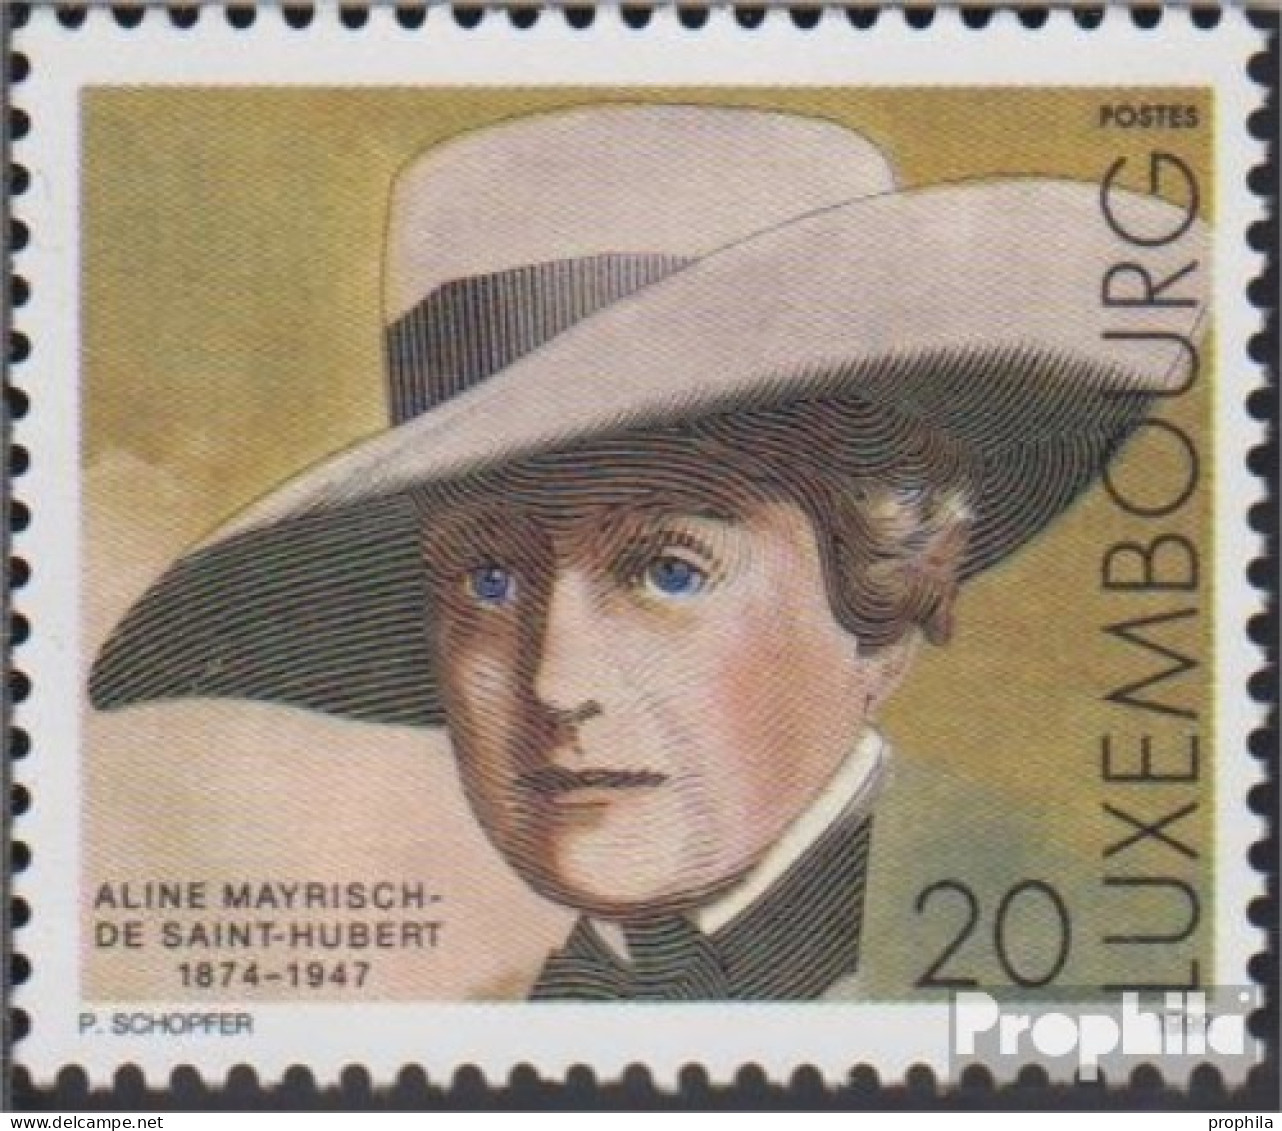 Luxemburg 1480 (kompl.Ausg.) Postfrisch 1999 Aline Mayrisch-de Saint-Hubert - Ongebruikt